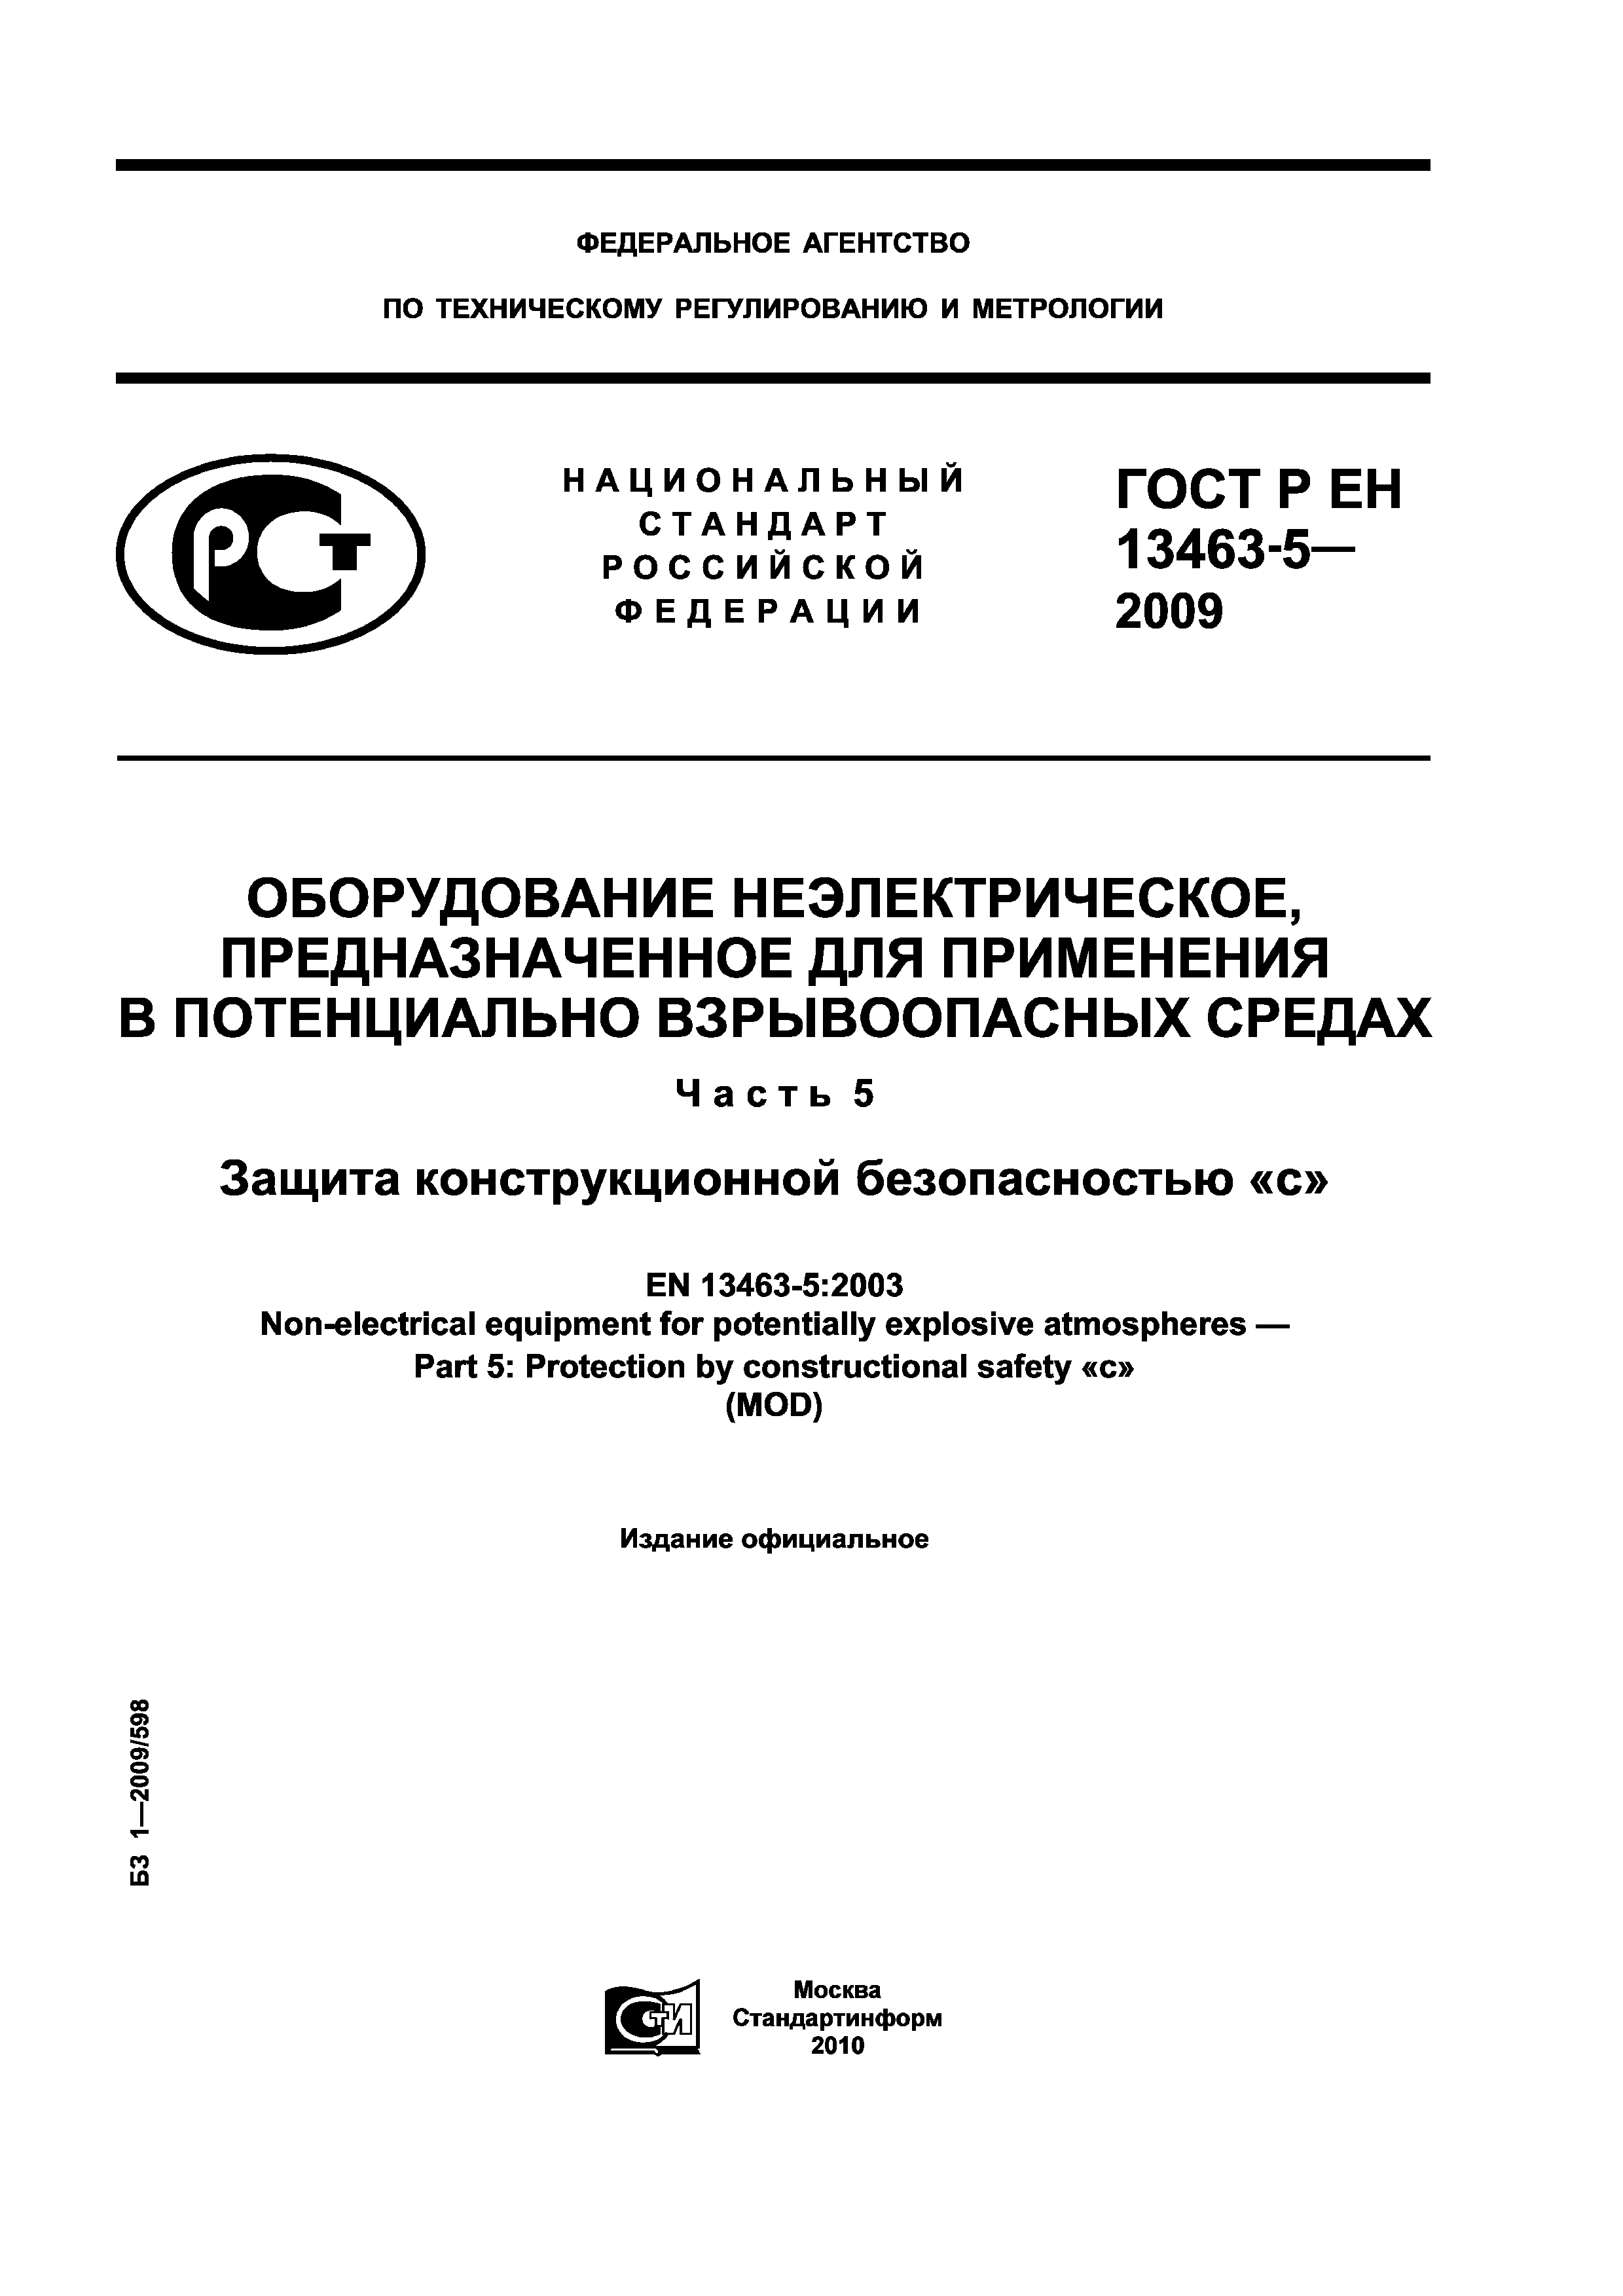 ГОСТ Р ЕН 13463-5-2009